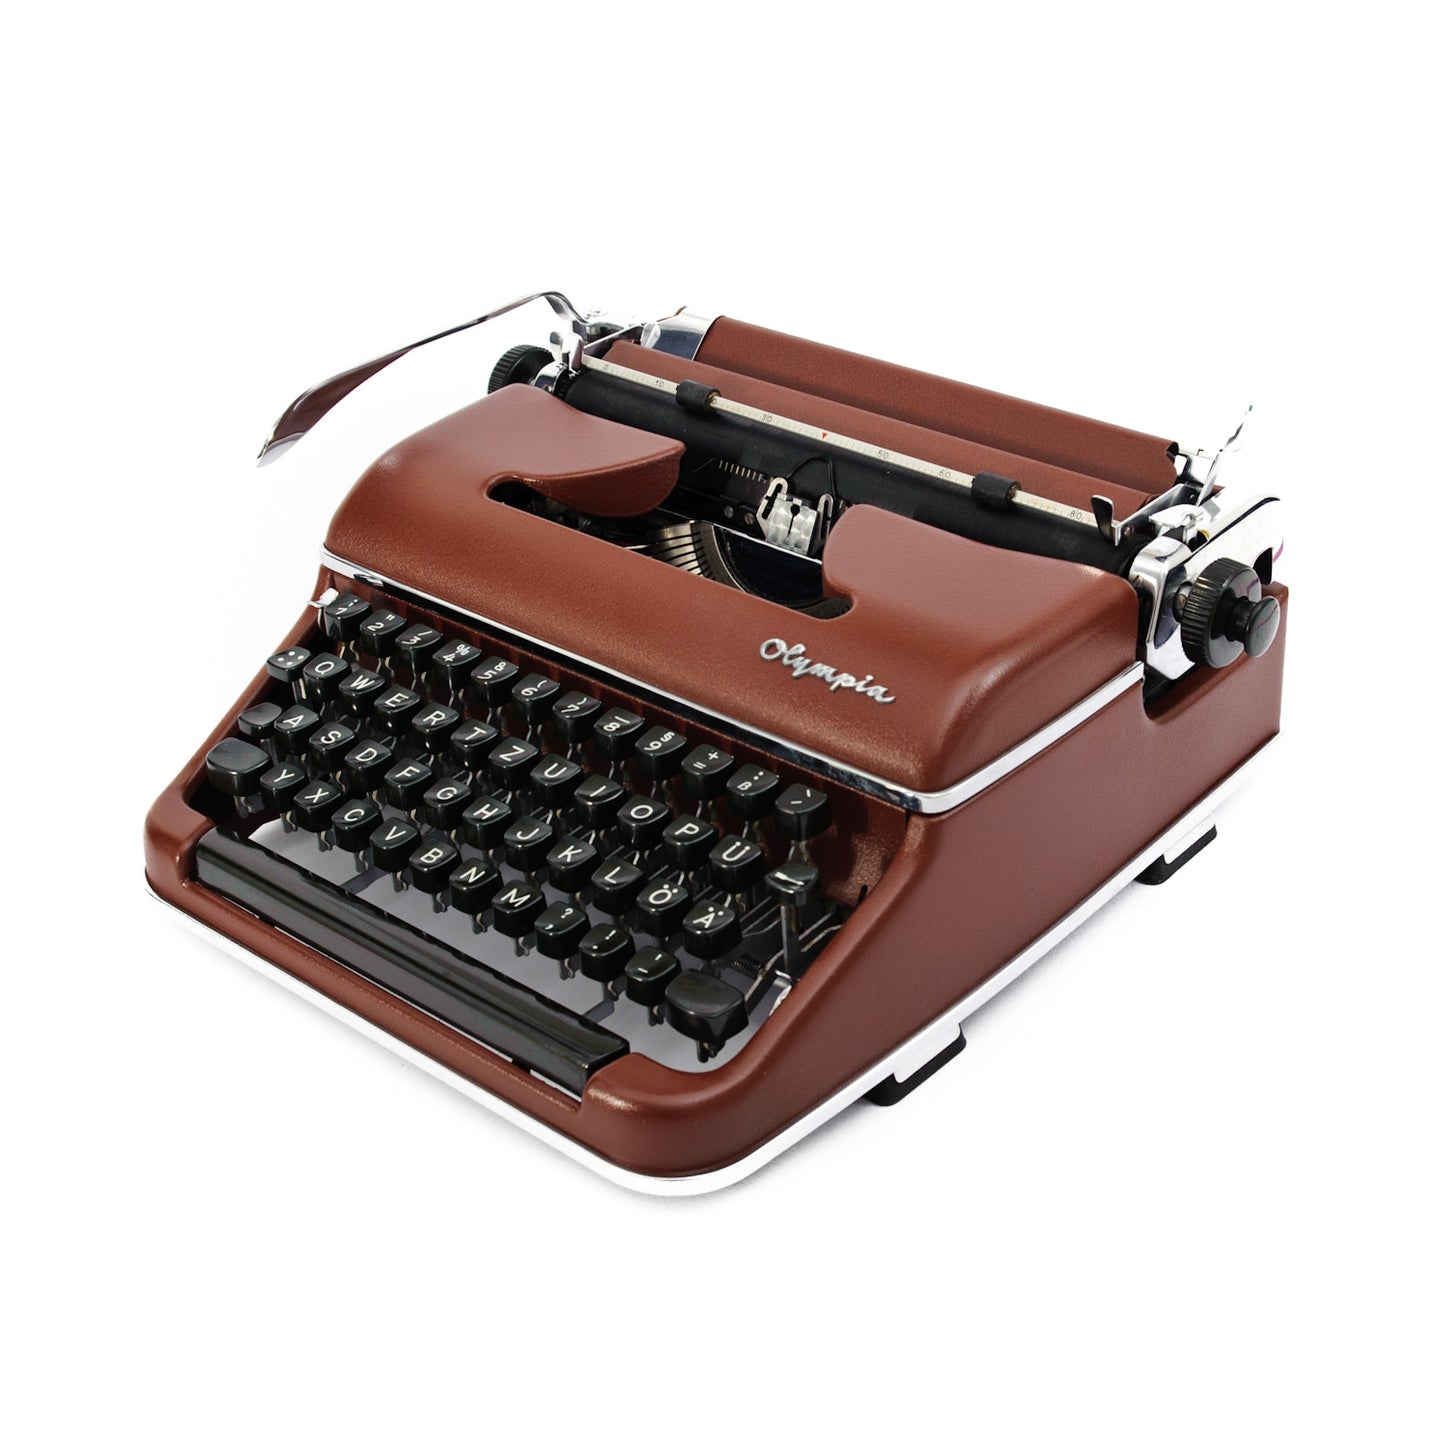 Brown Typewriter Olympia SM2